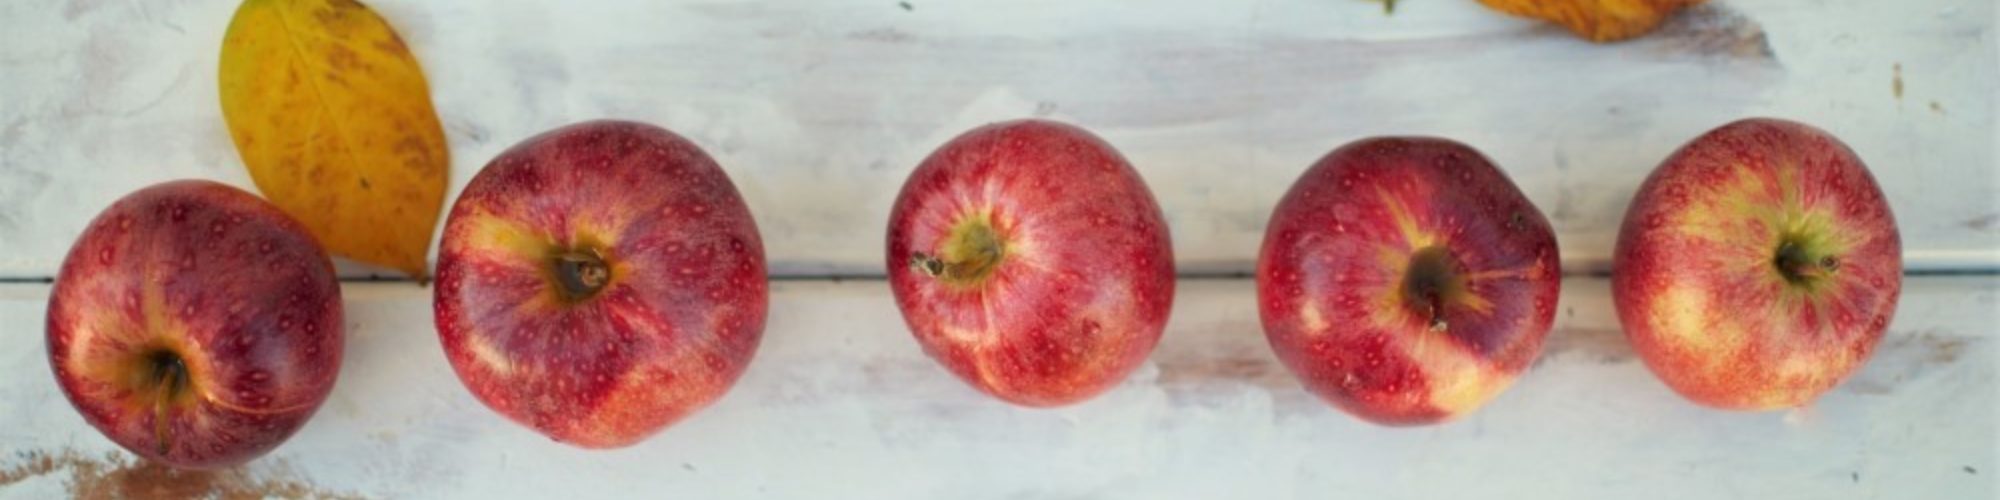 Apple Harvest On Table Unsplash